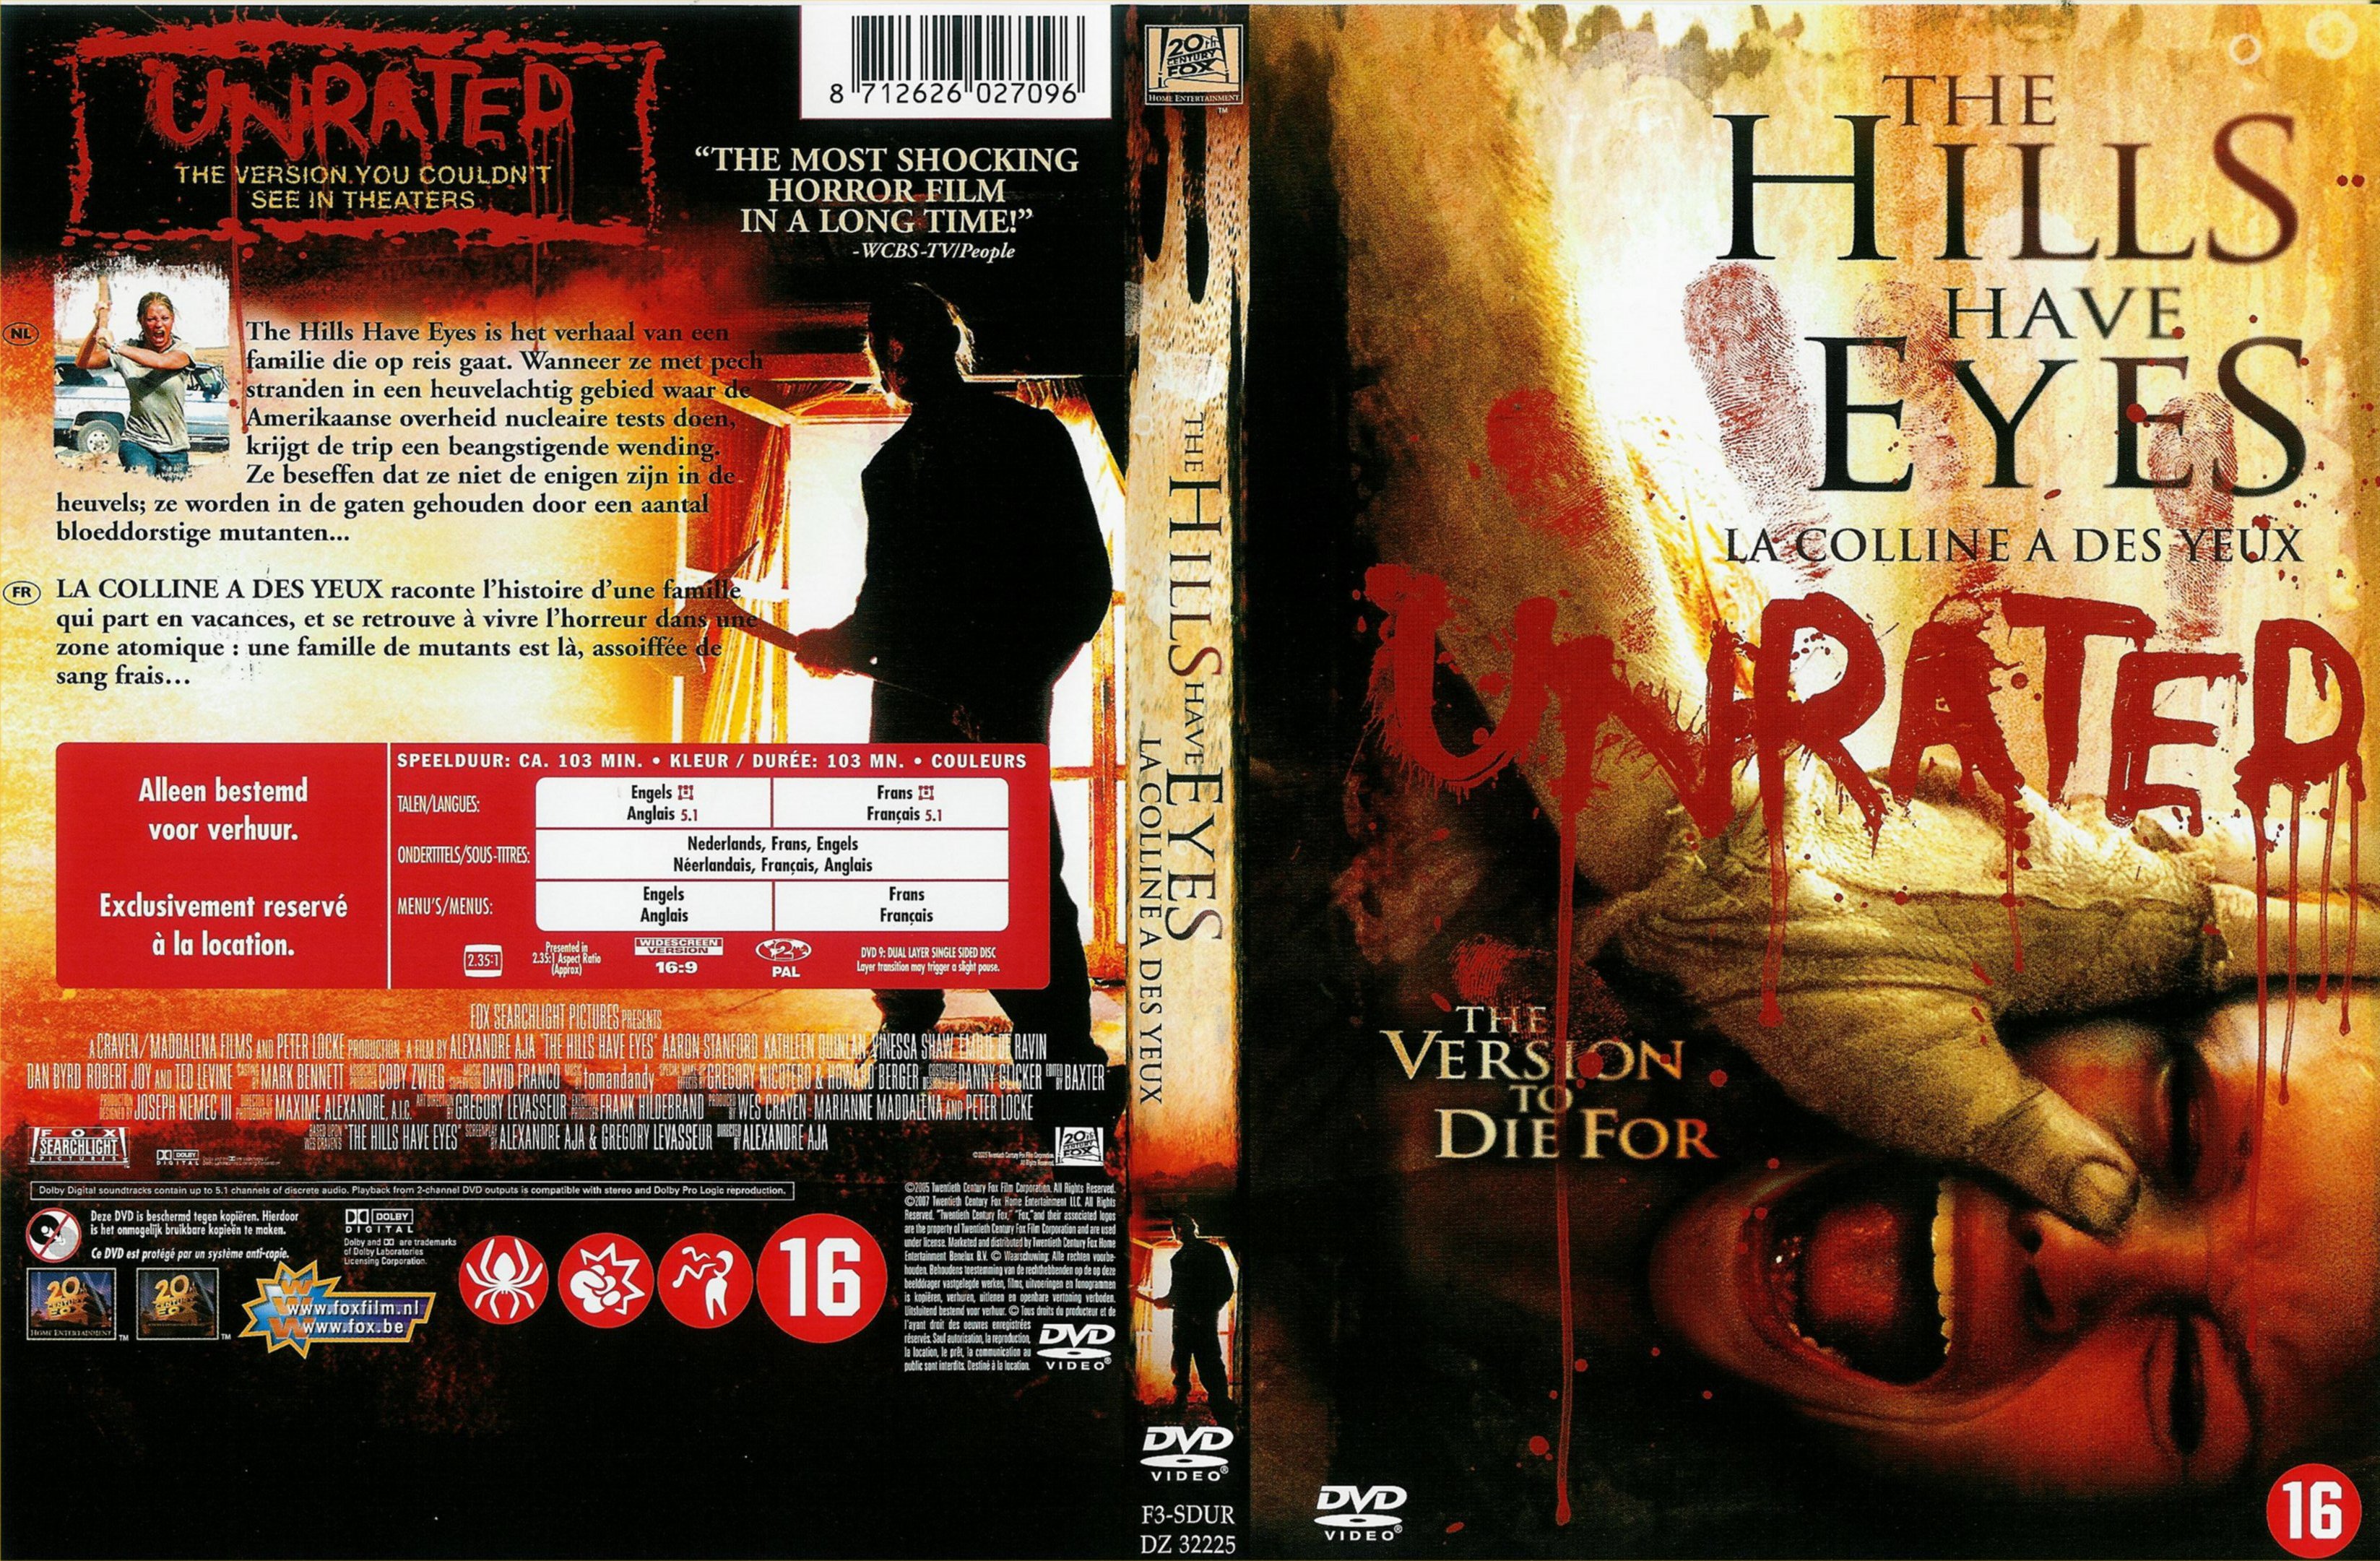 Jaquette DVD La colline  des yeux (2006) v3